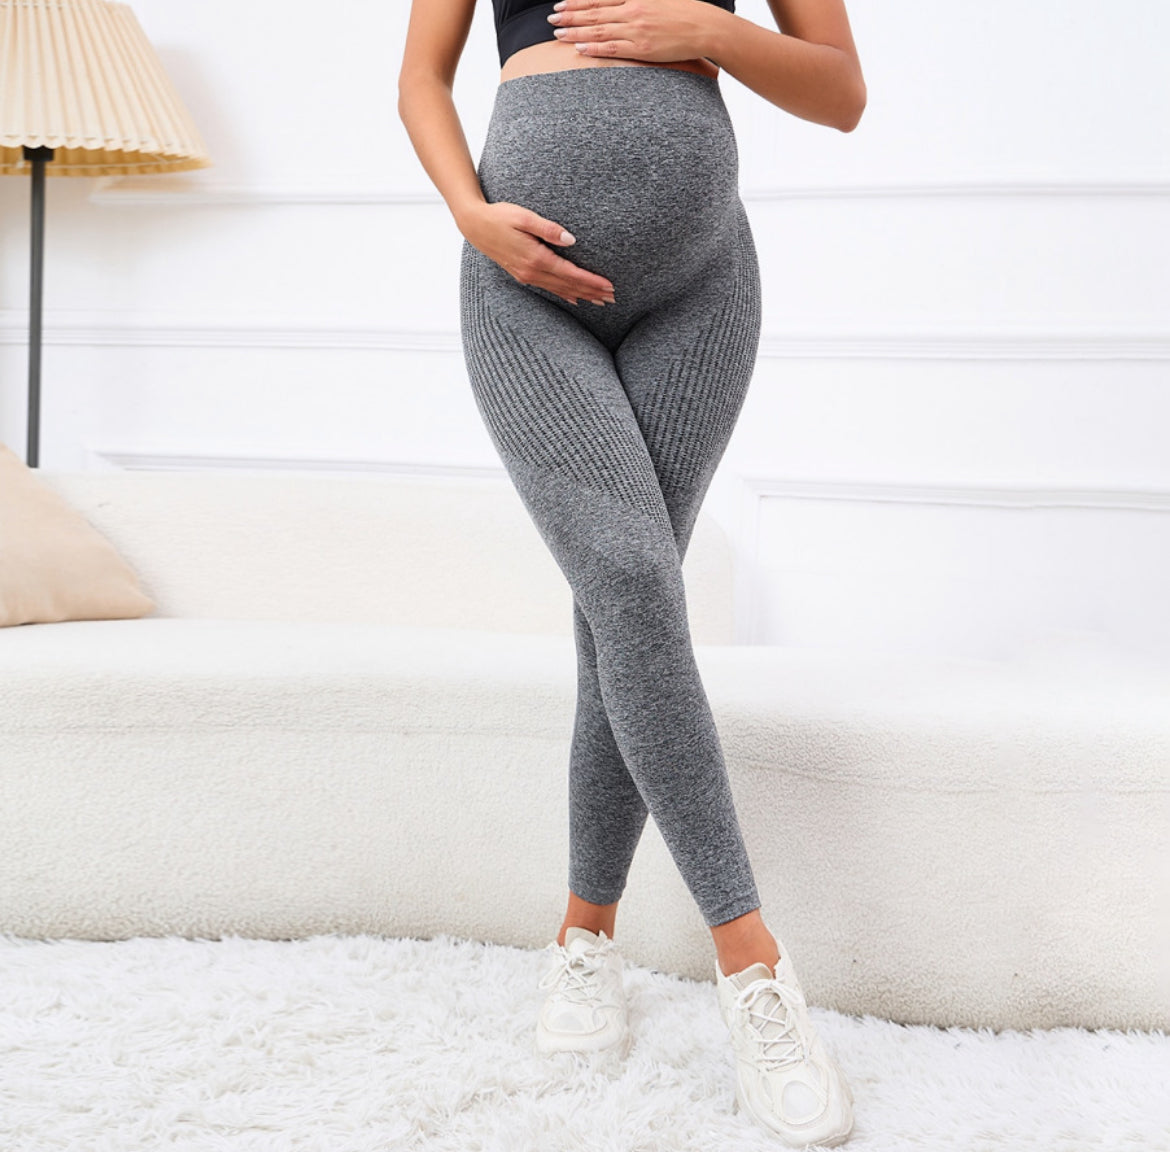 Elastic High Waist Maternity Leggings, Support Postpartum Body Shaper